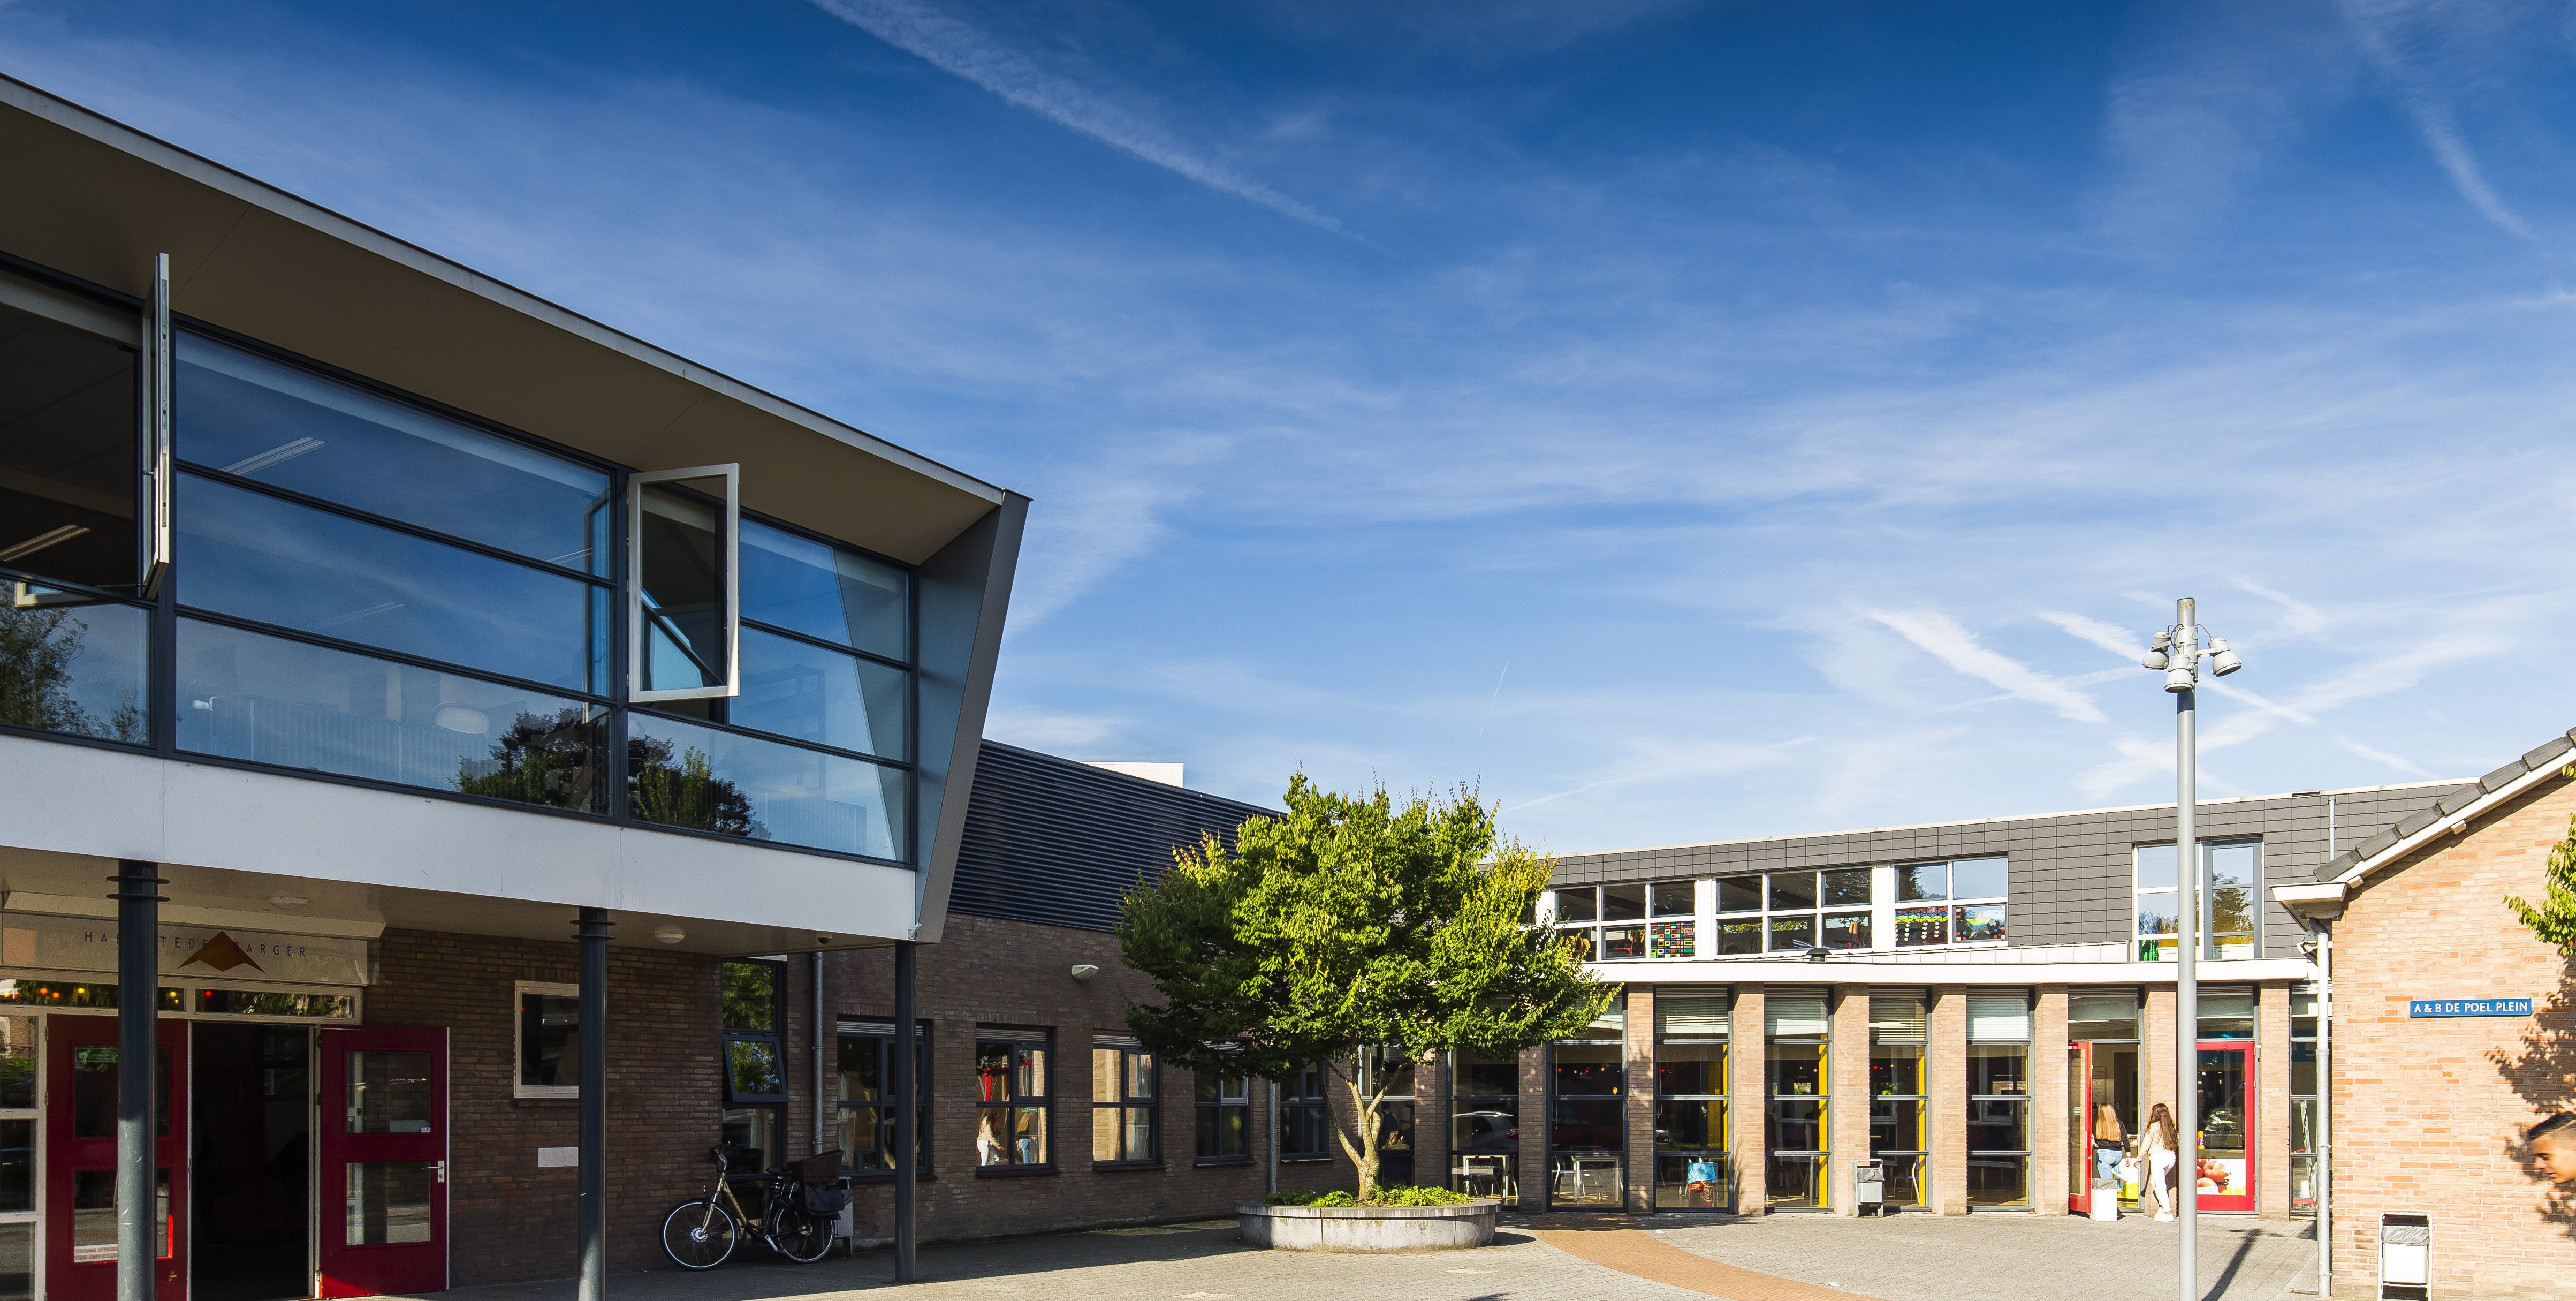 Haemstede-Barger-Mavo-HBM-middelbare-school-Heemstede-school-gebouw